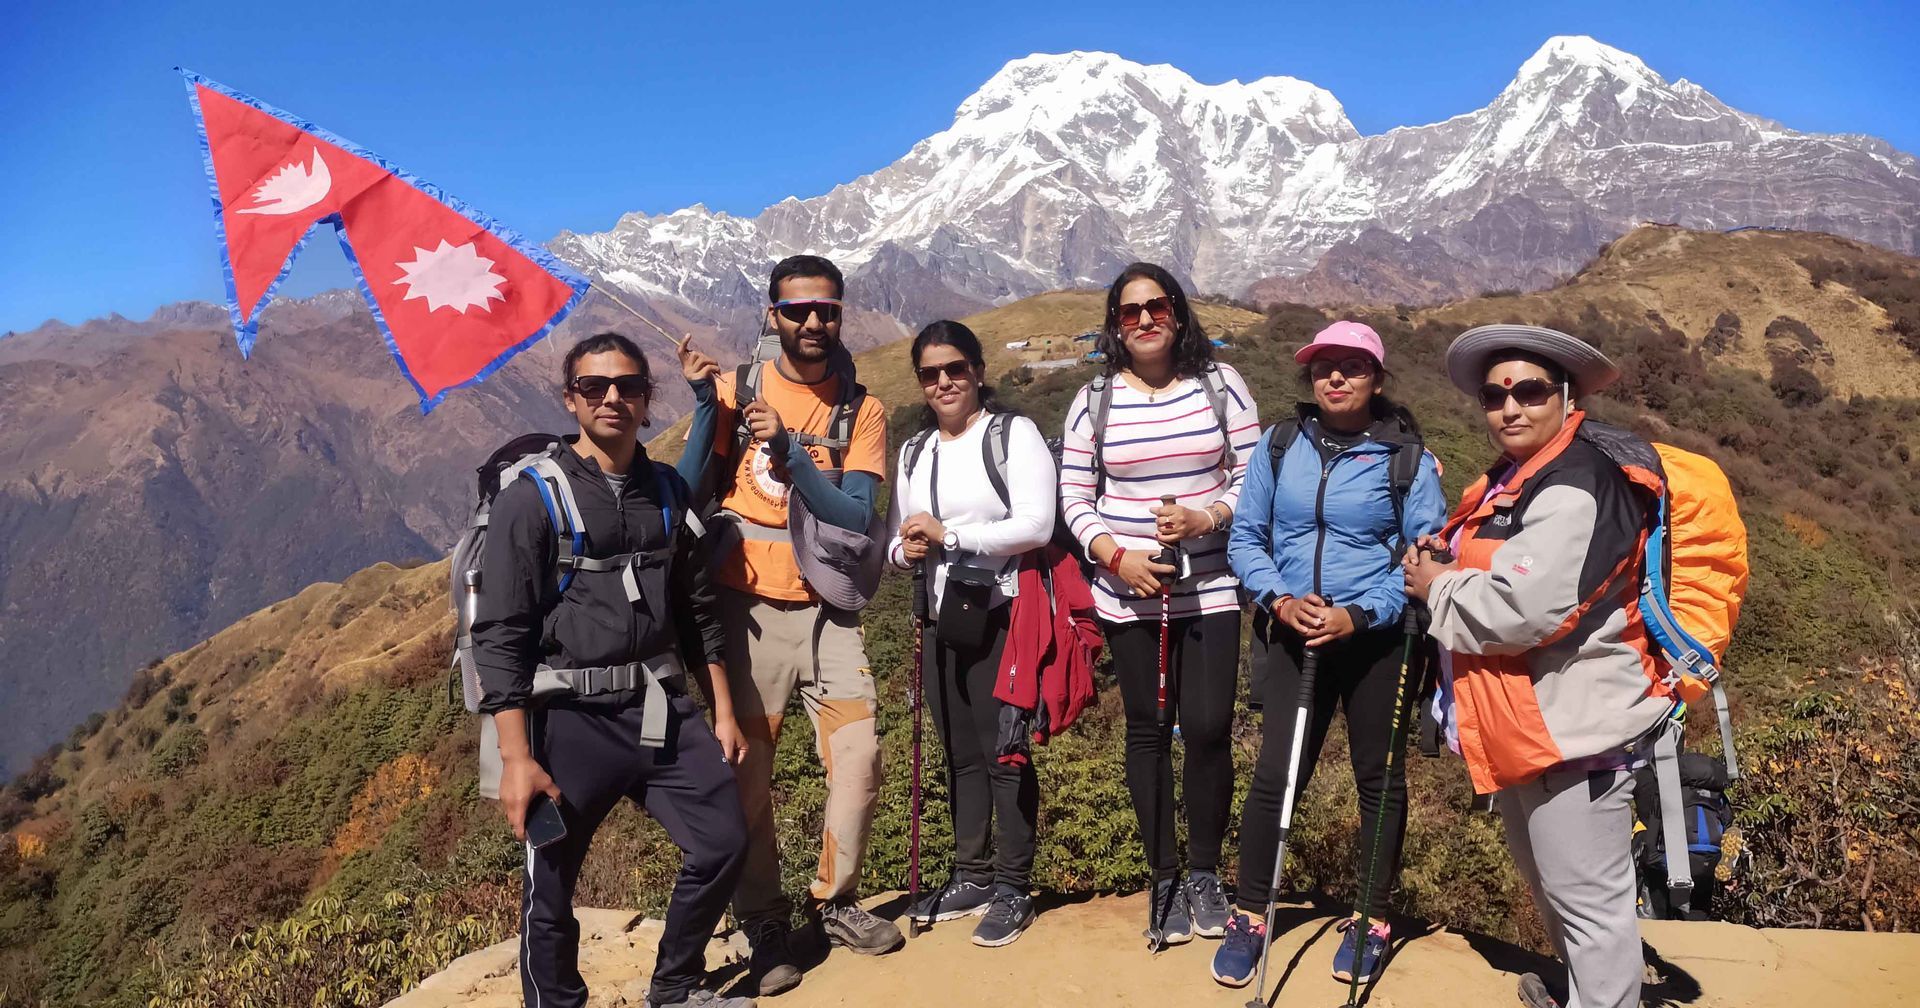 Trekking group in Annapurna Region